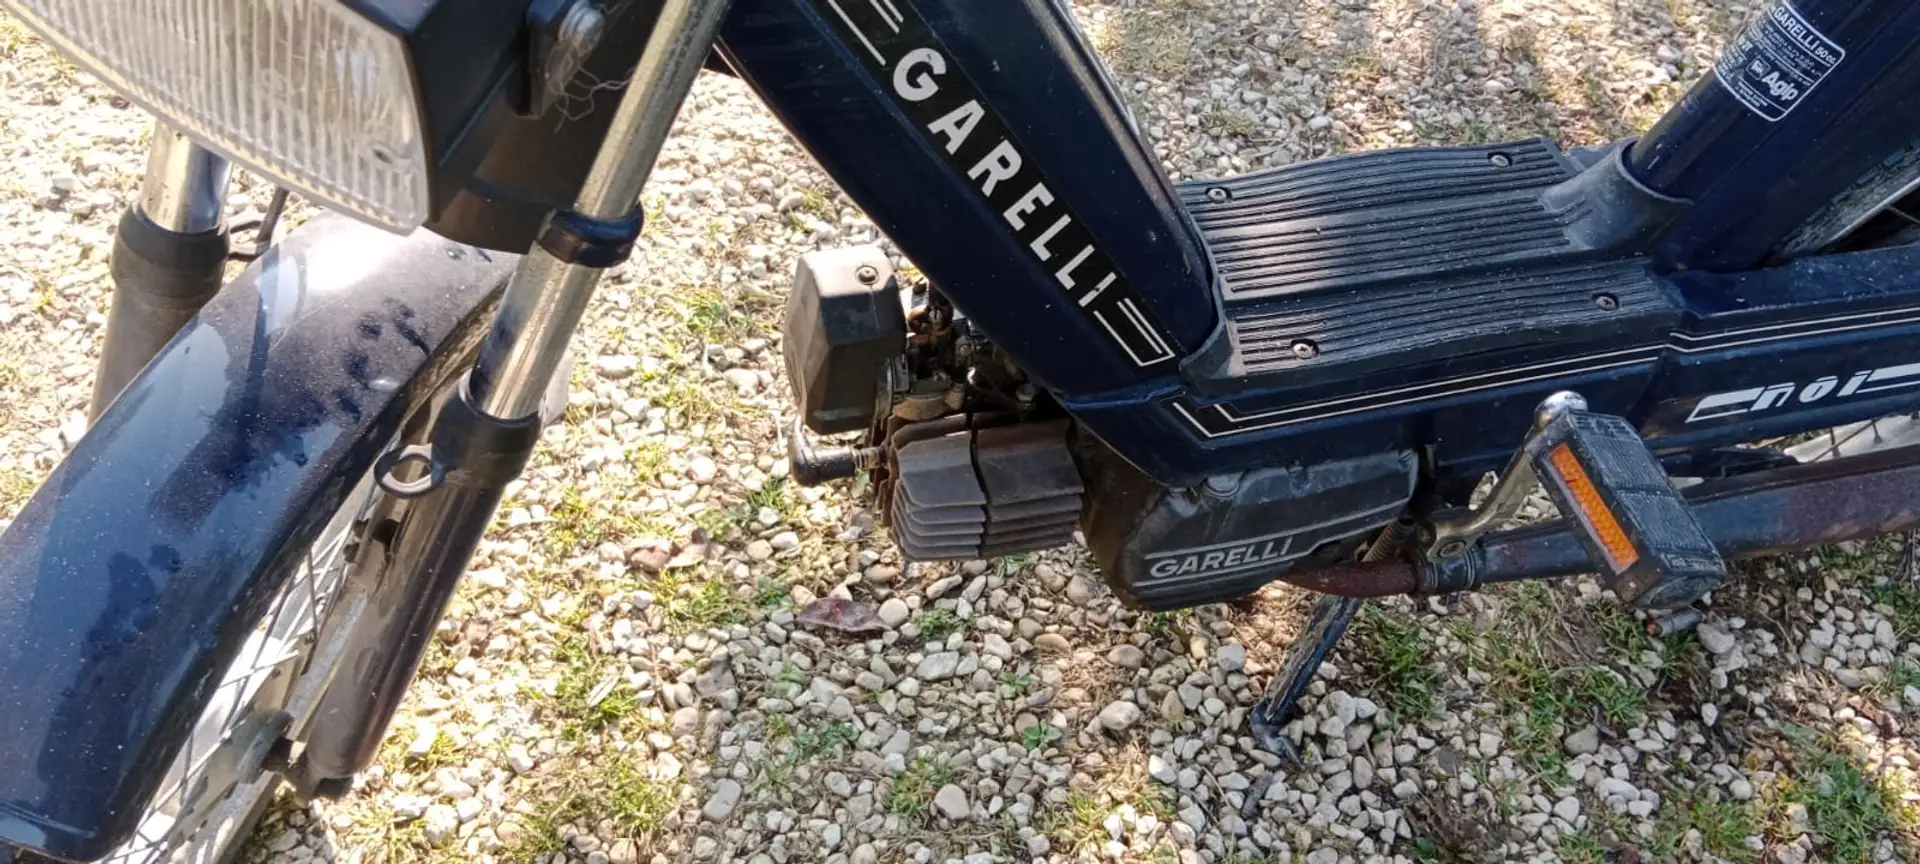 Garelli garelli NOI 50 CC anno 1980 Azul - 1